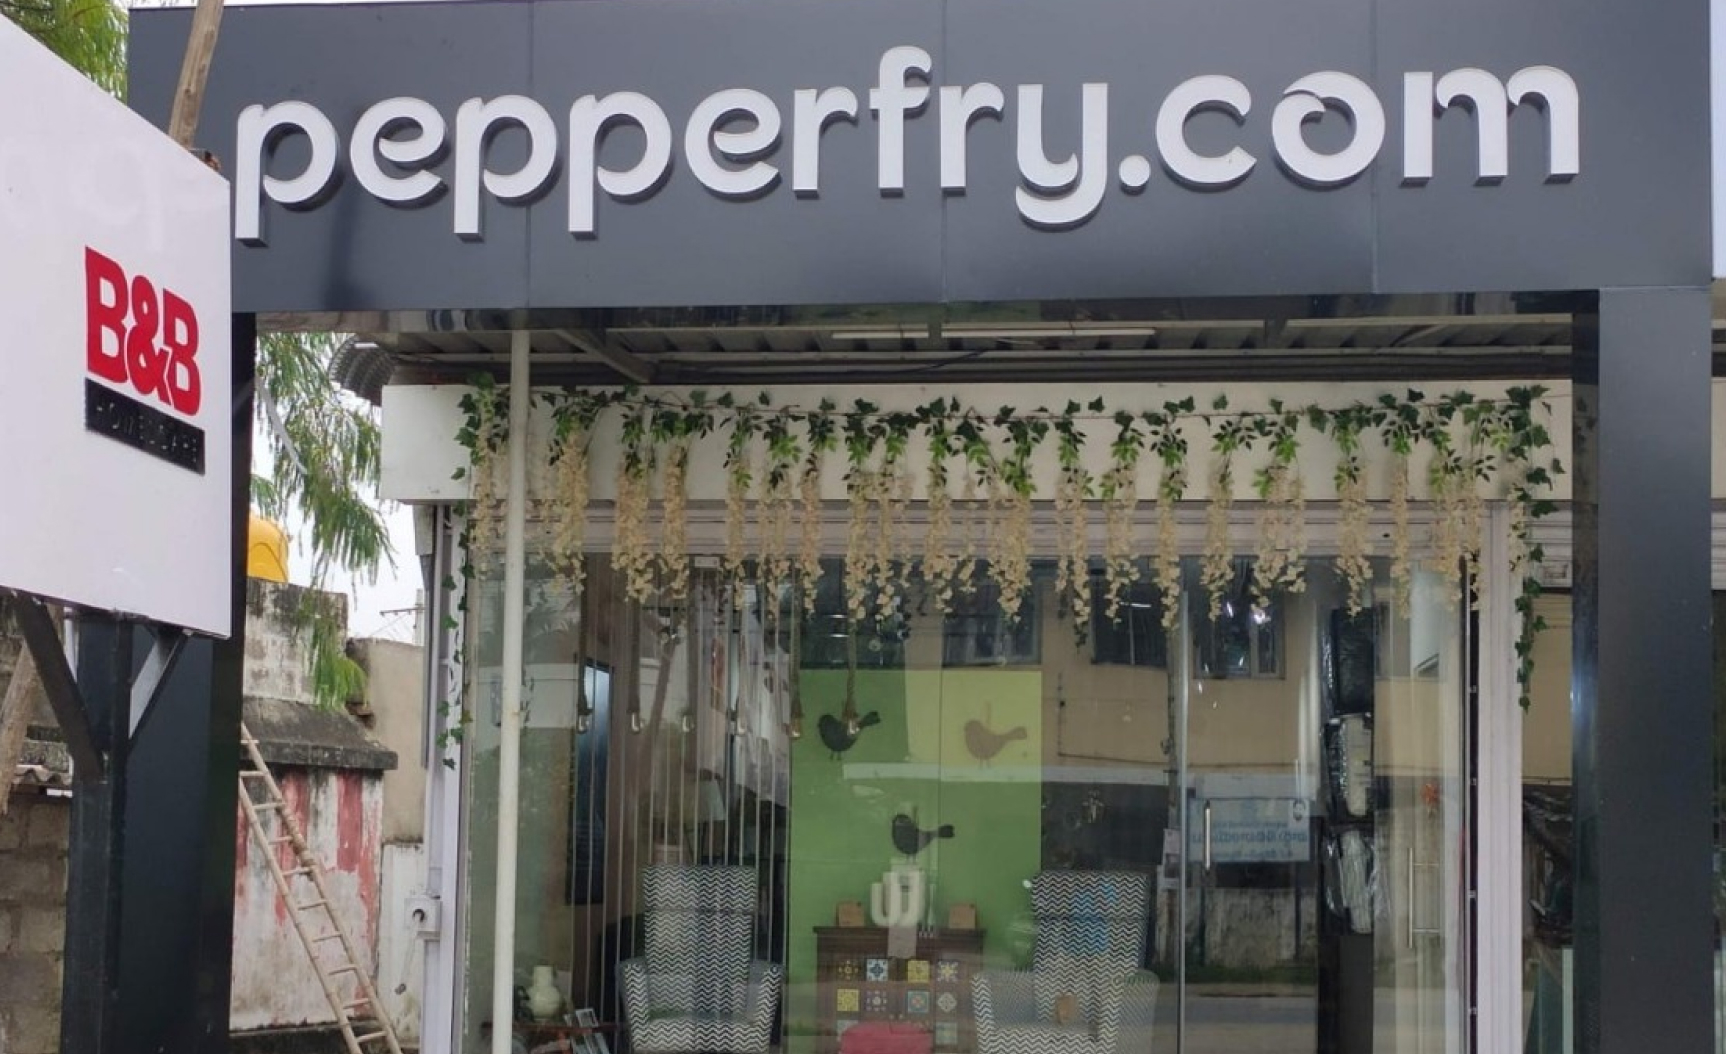 Studio Pepperfry - Kattamanchi, Chittoor